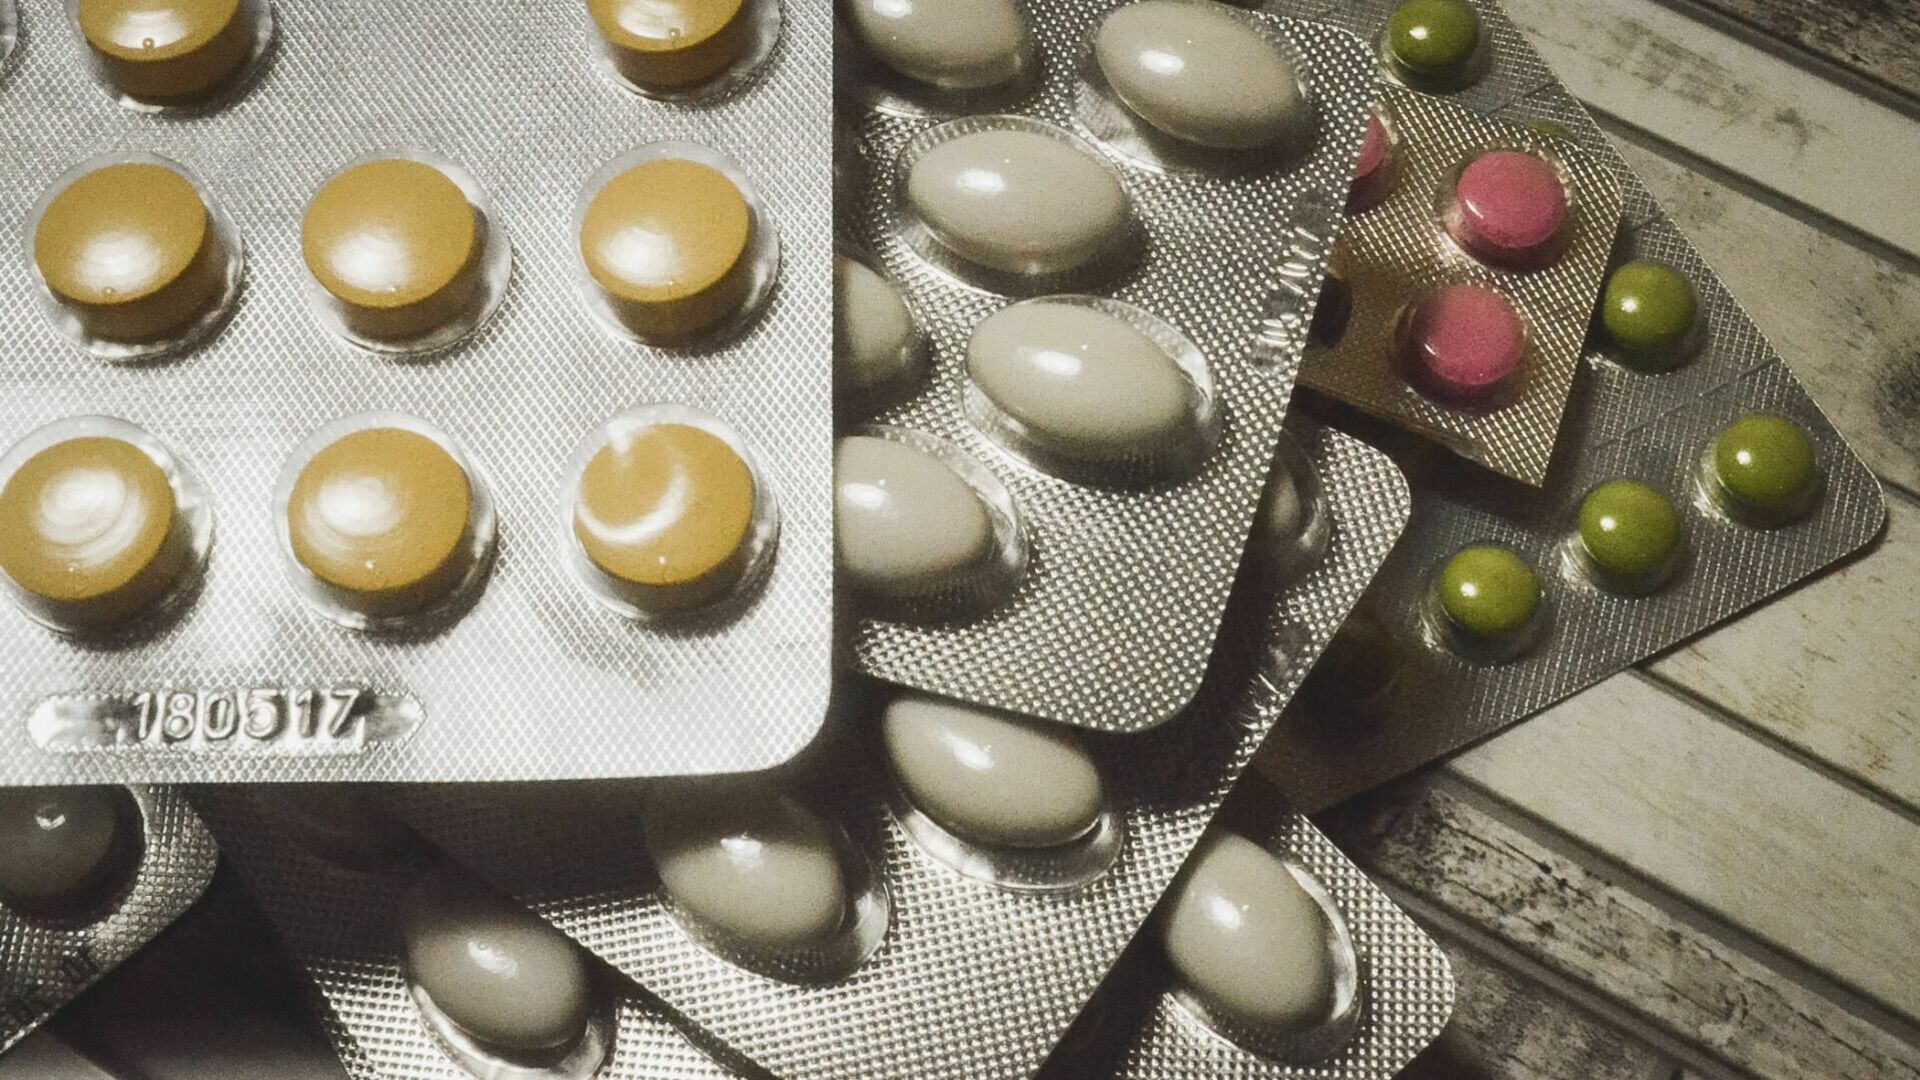 Аспирин, йод и корвалол могут стать дефицитными лекарствами в Оренбуржье